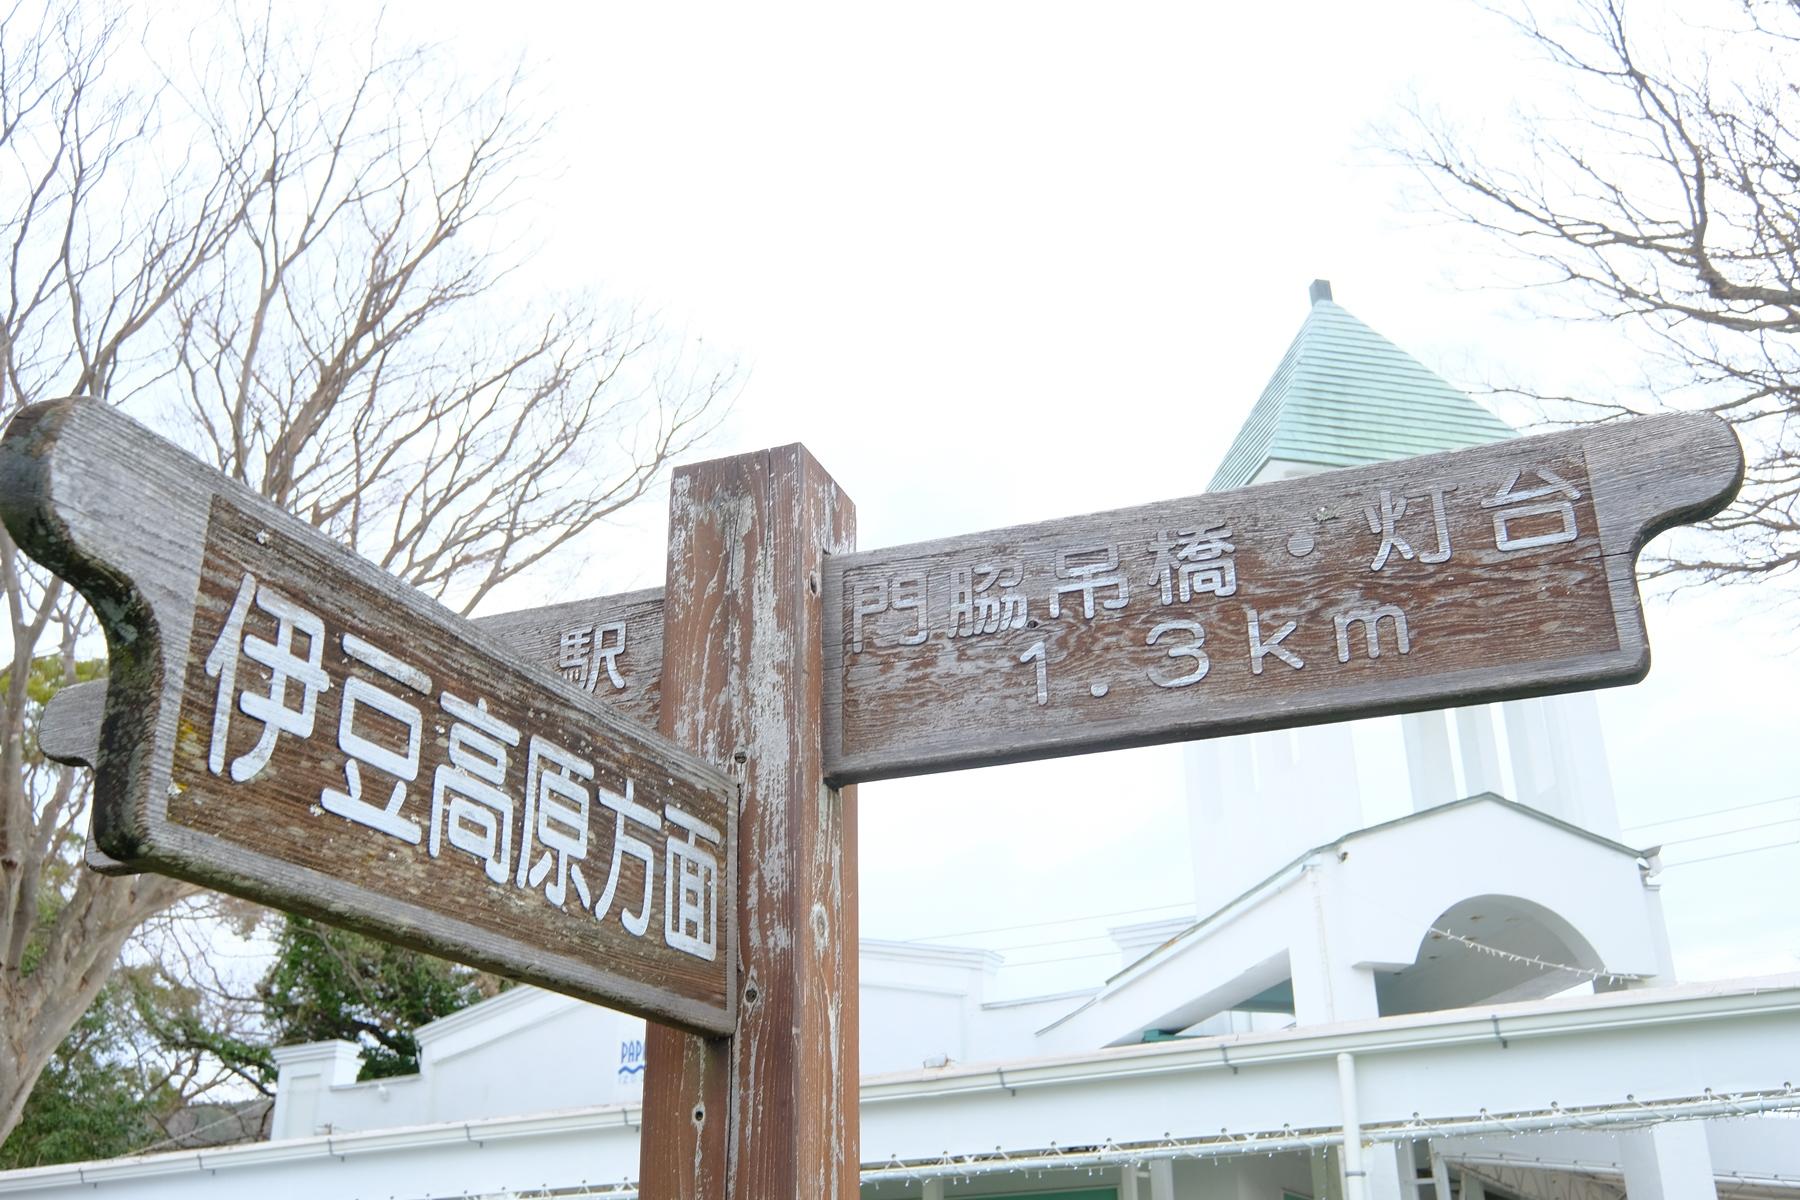 門脇吊橋・灯台と伊豆高原方面の案内看板の写真